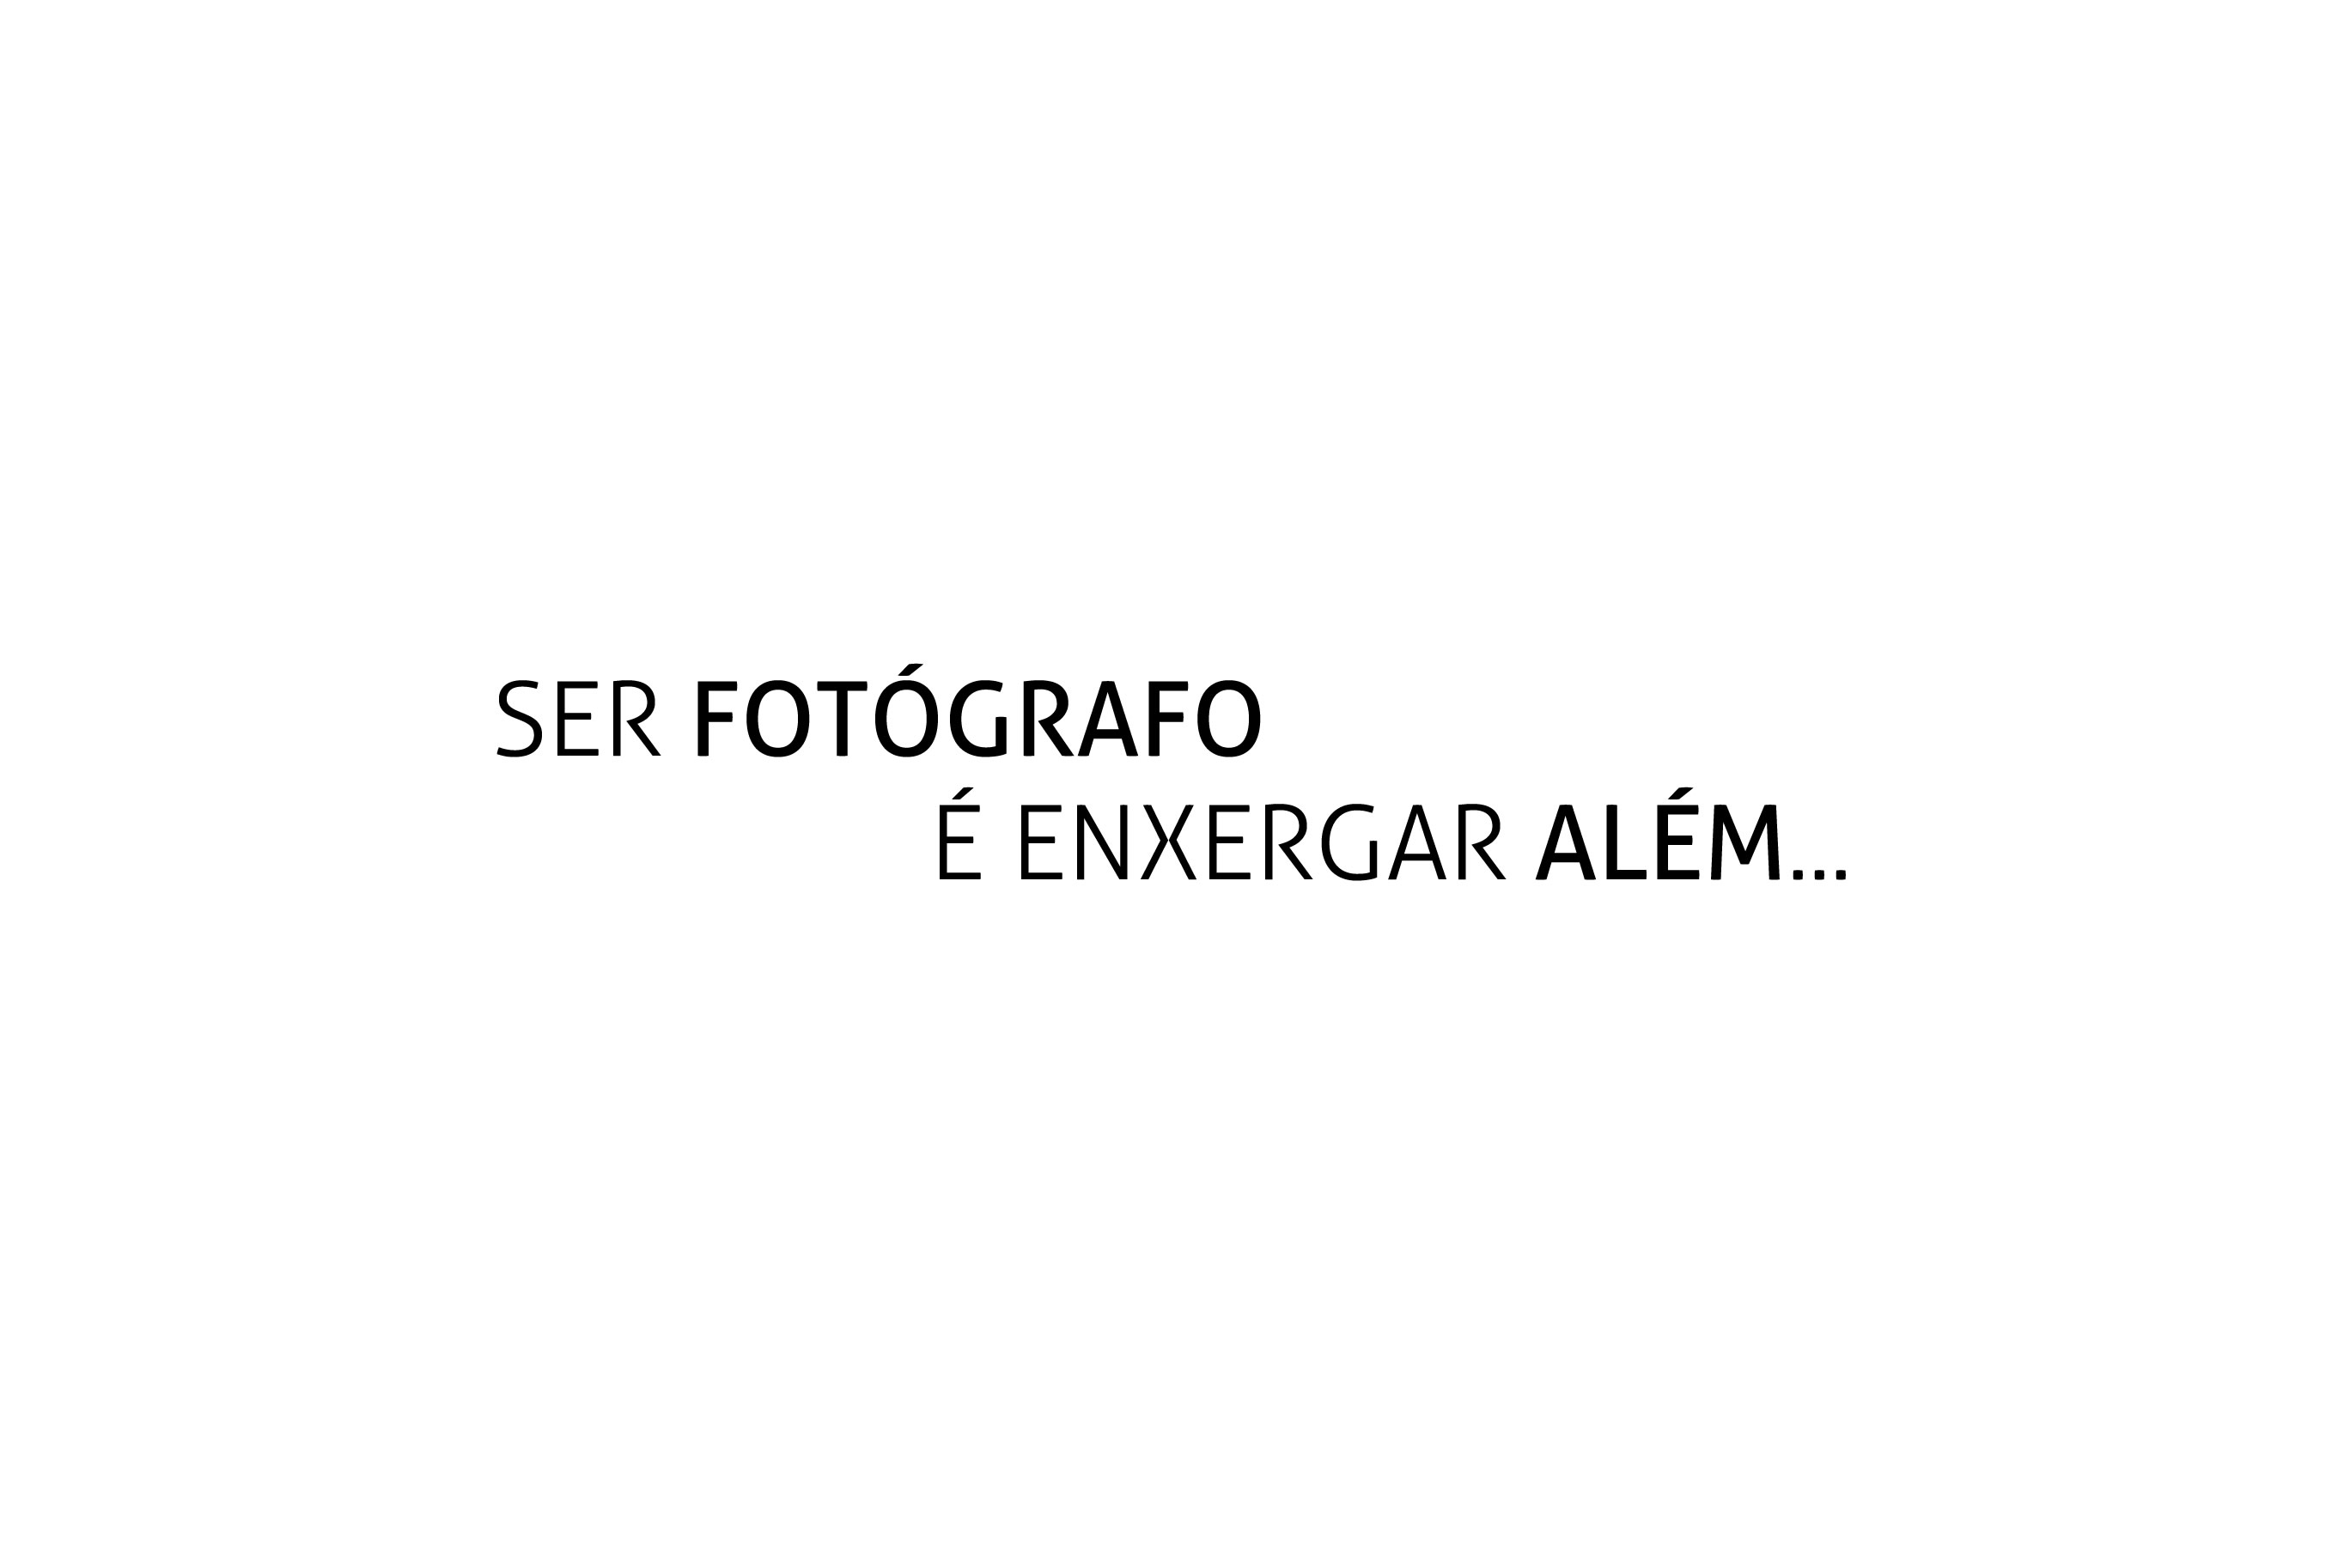 João Melo Fotografia - Fotógrafo de Casamentos, Gestantes, Familia, Book Externo e Celebridades em Fortaleza, Ceará